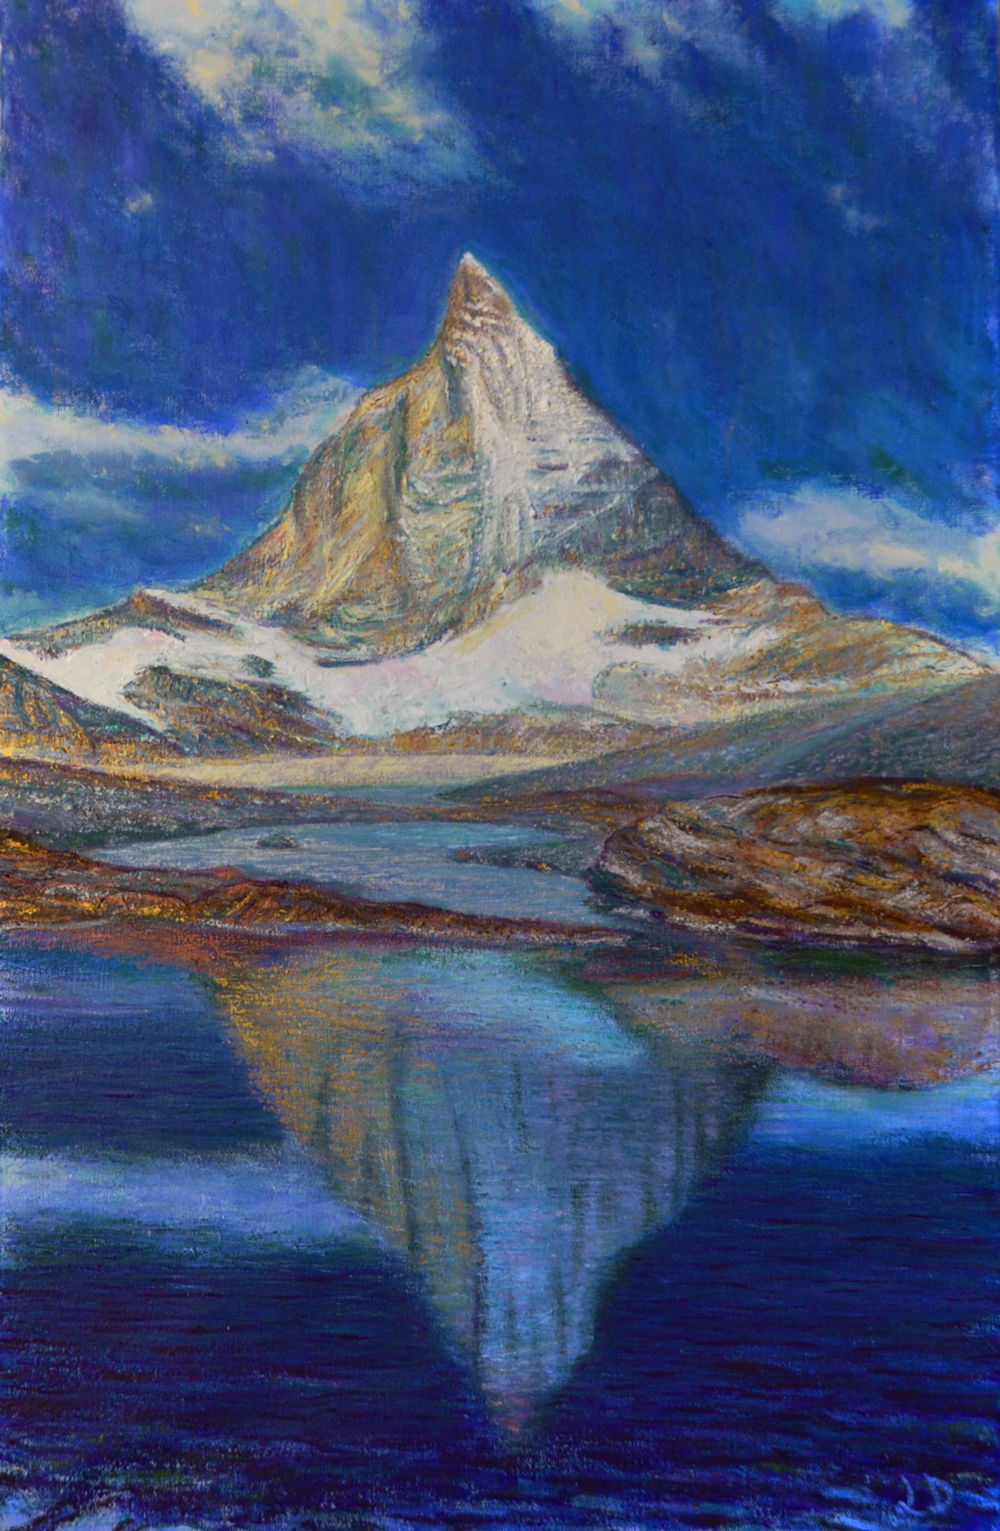 Matterhorn, from Trockener Steg. Oil on canvas, 100x60, 2018